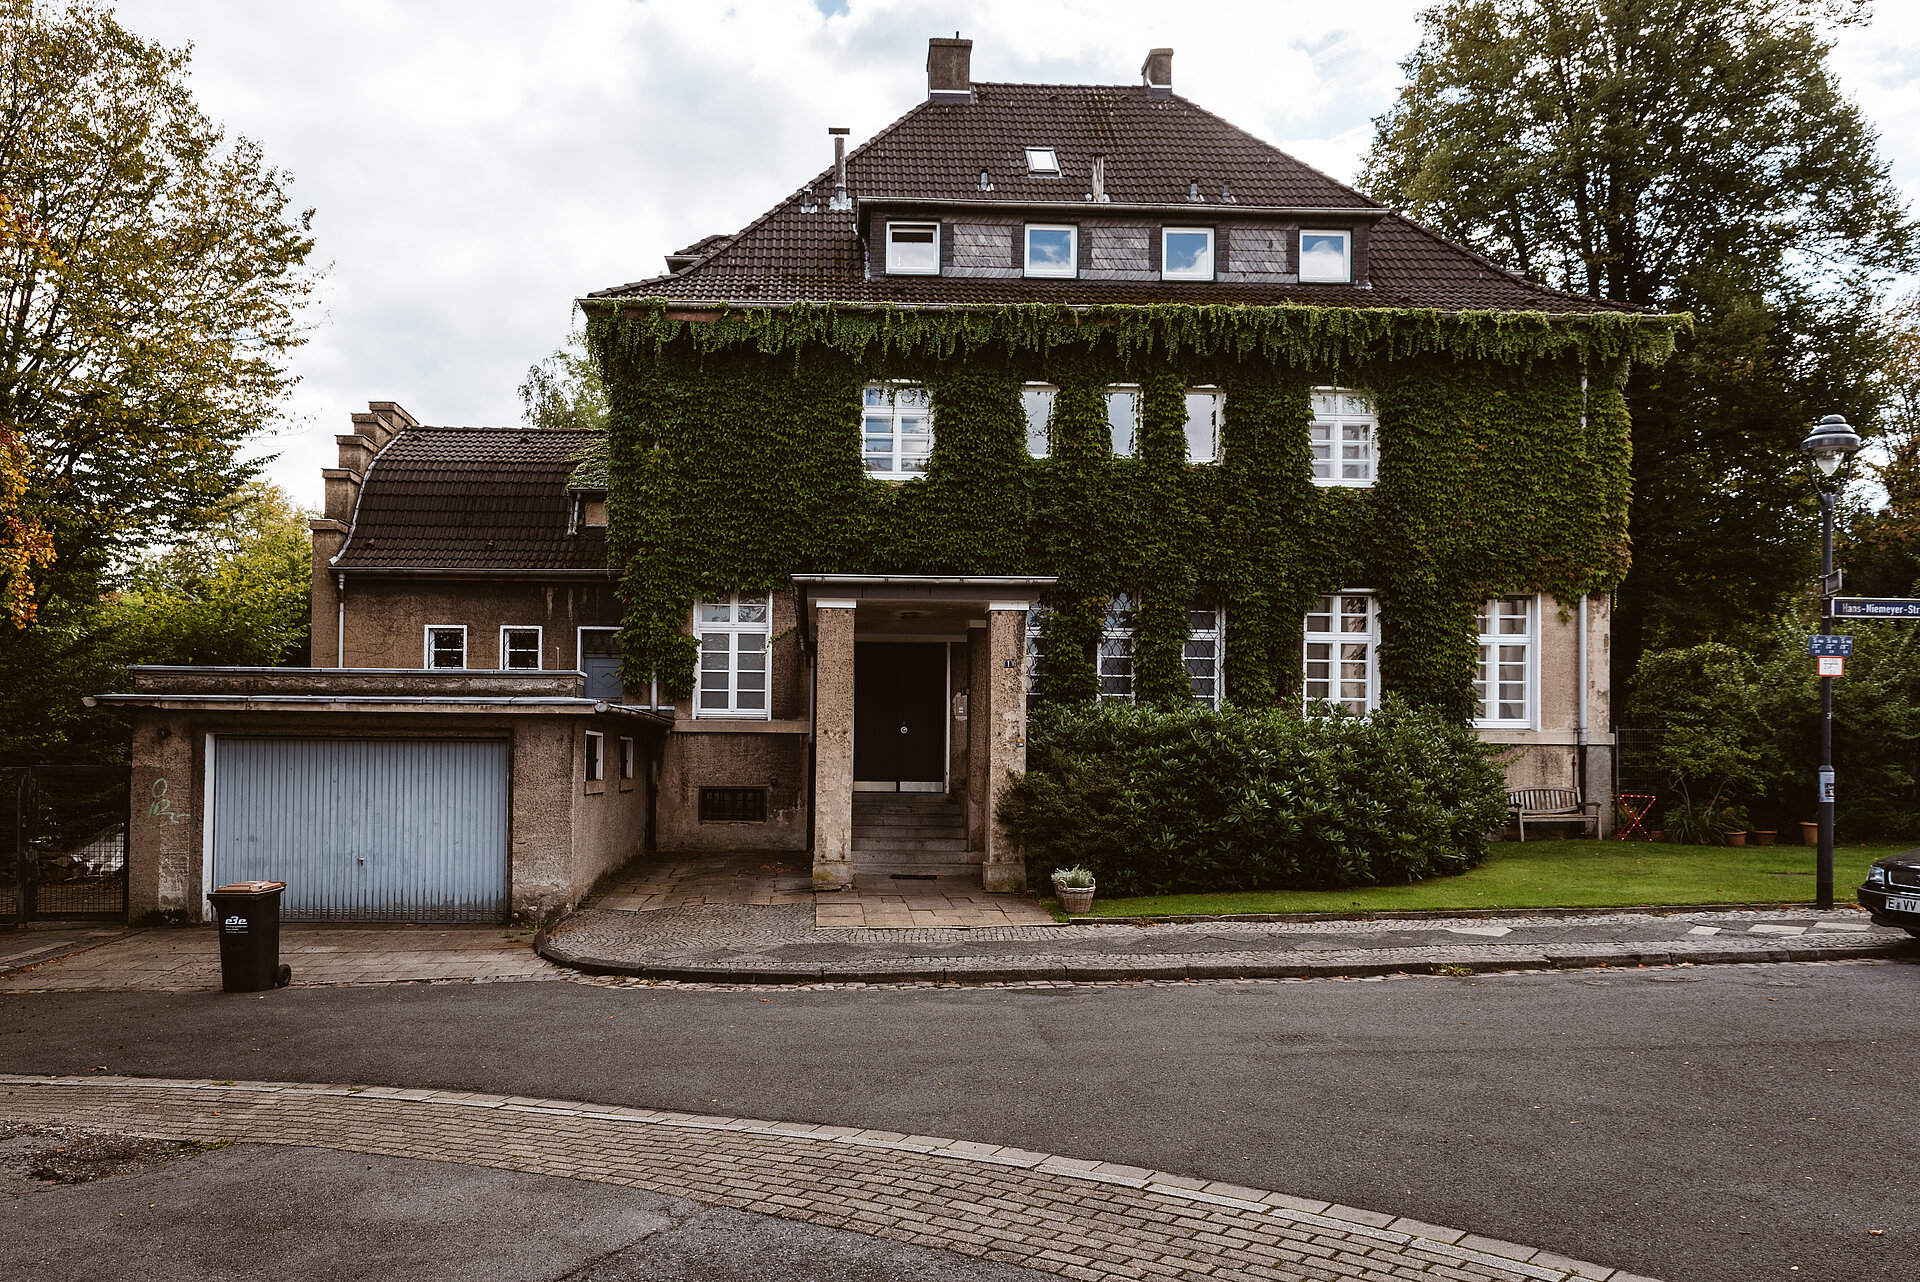 Siedlung Altenhof II in Essen.